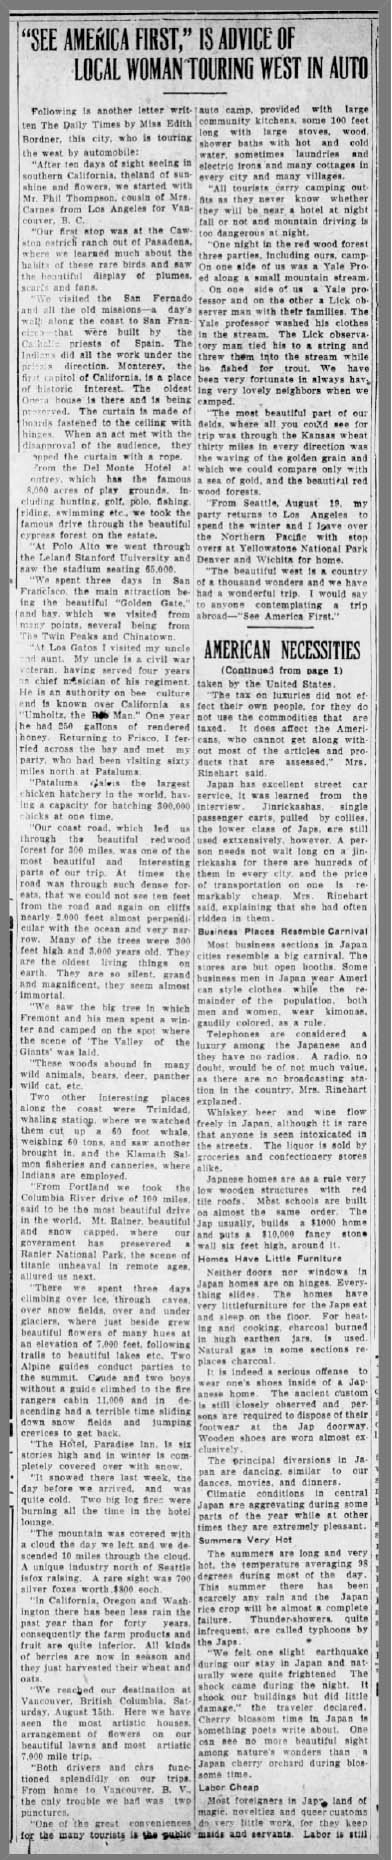 The Daily Times (New Philadelphia, Ohio) Sat, Aug 30, 1924